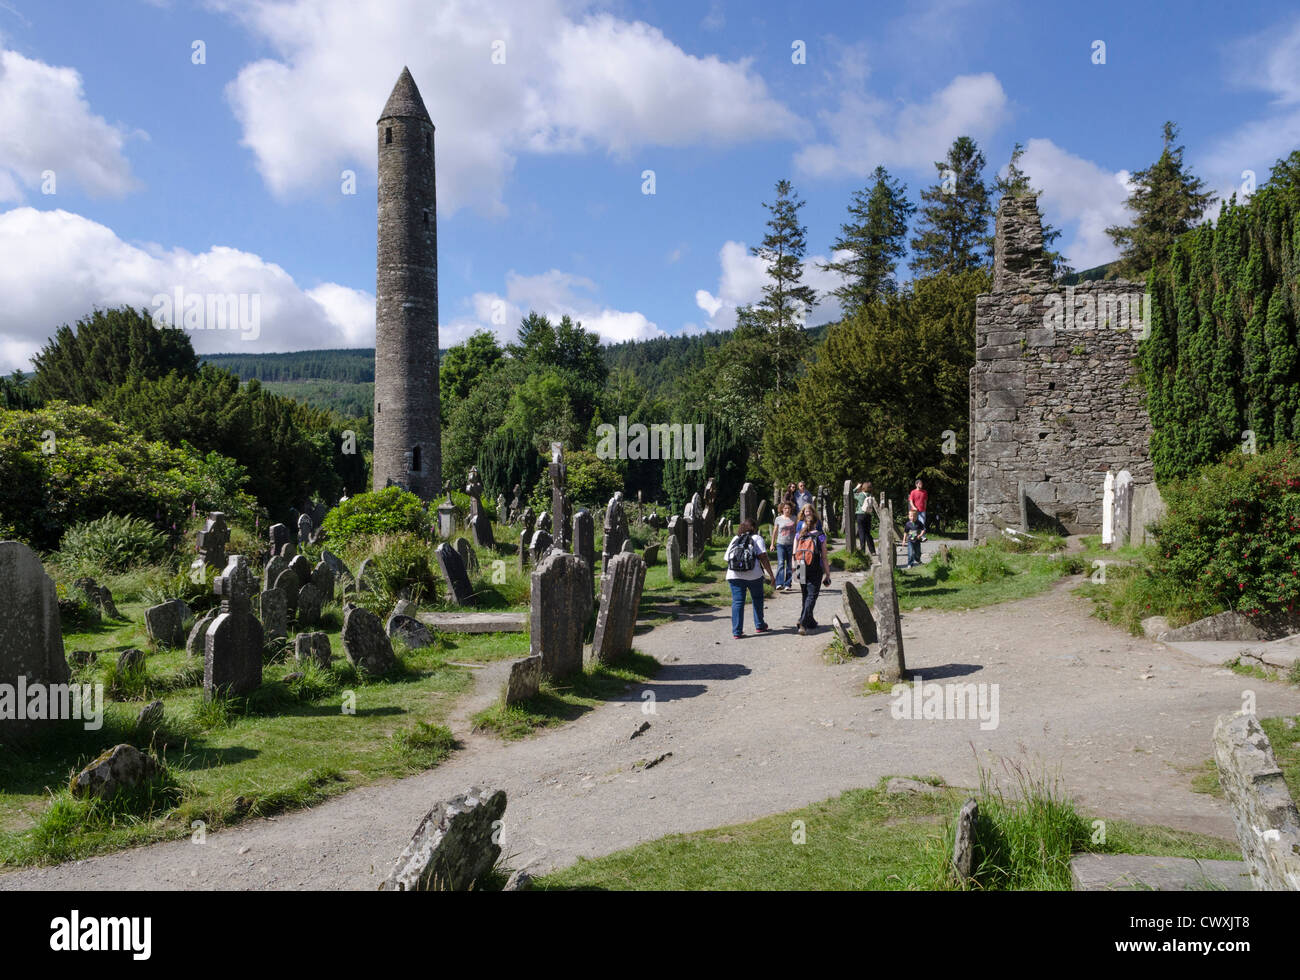 Irland-Landschaft - Runde Turm und Ruinen von Glendalough, County Wicklow, Irland mit Touristen Stockfoto